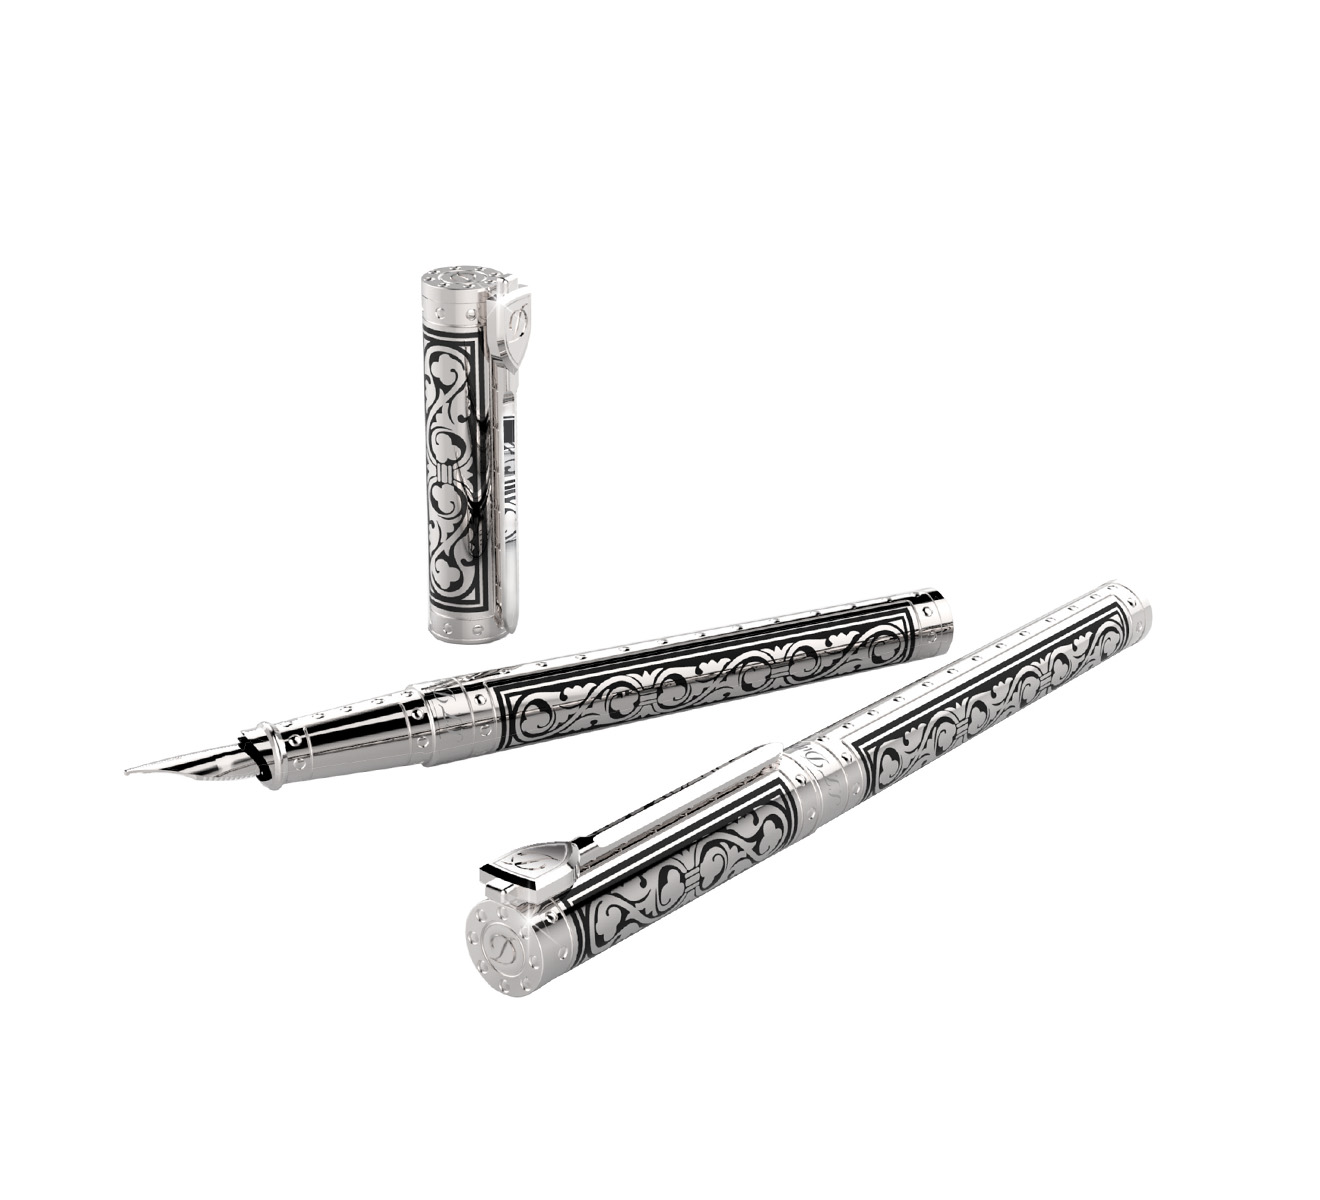 Перьевая ручка Premium S.T. Dupont White Knight 141030 - фото 2 – Mercury